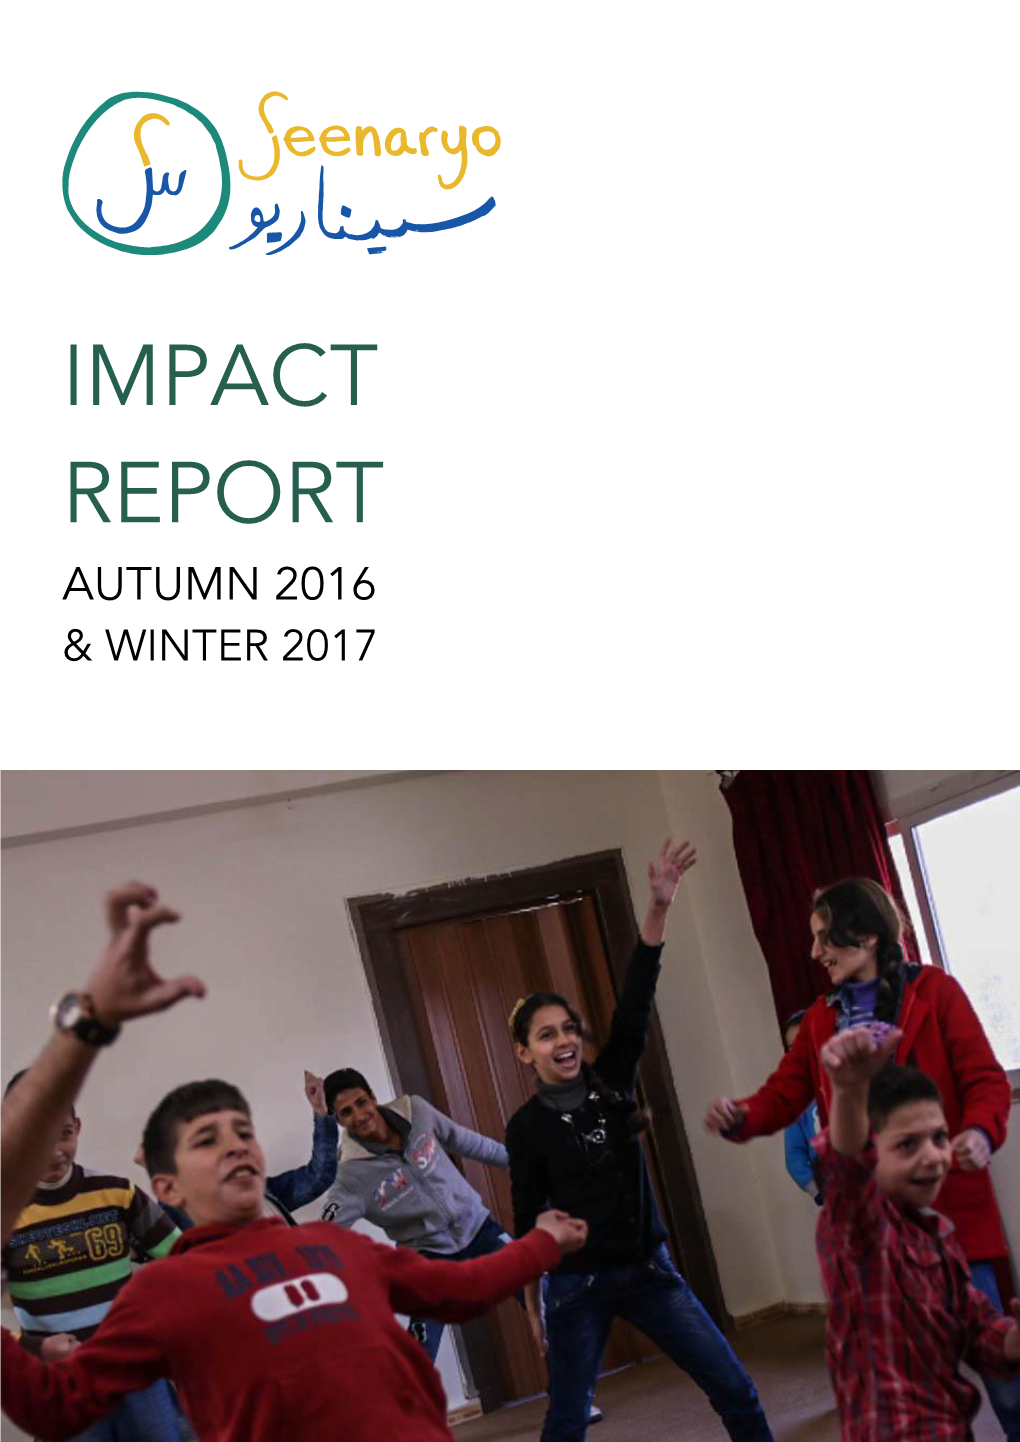 Impact Report Autumn 2016 & Winter 2017